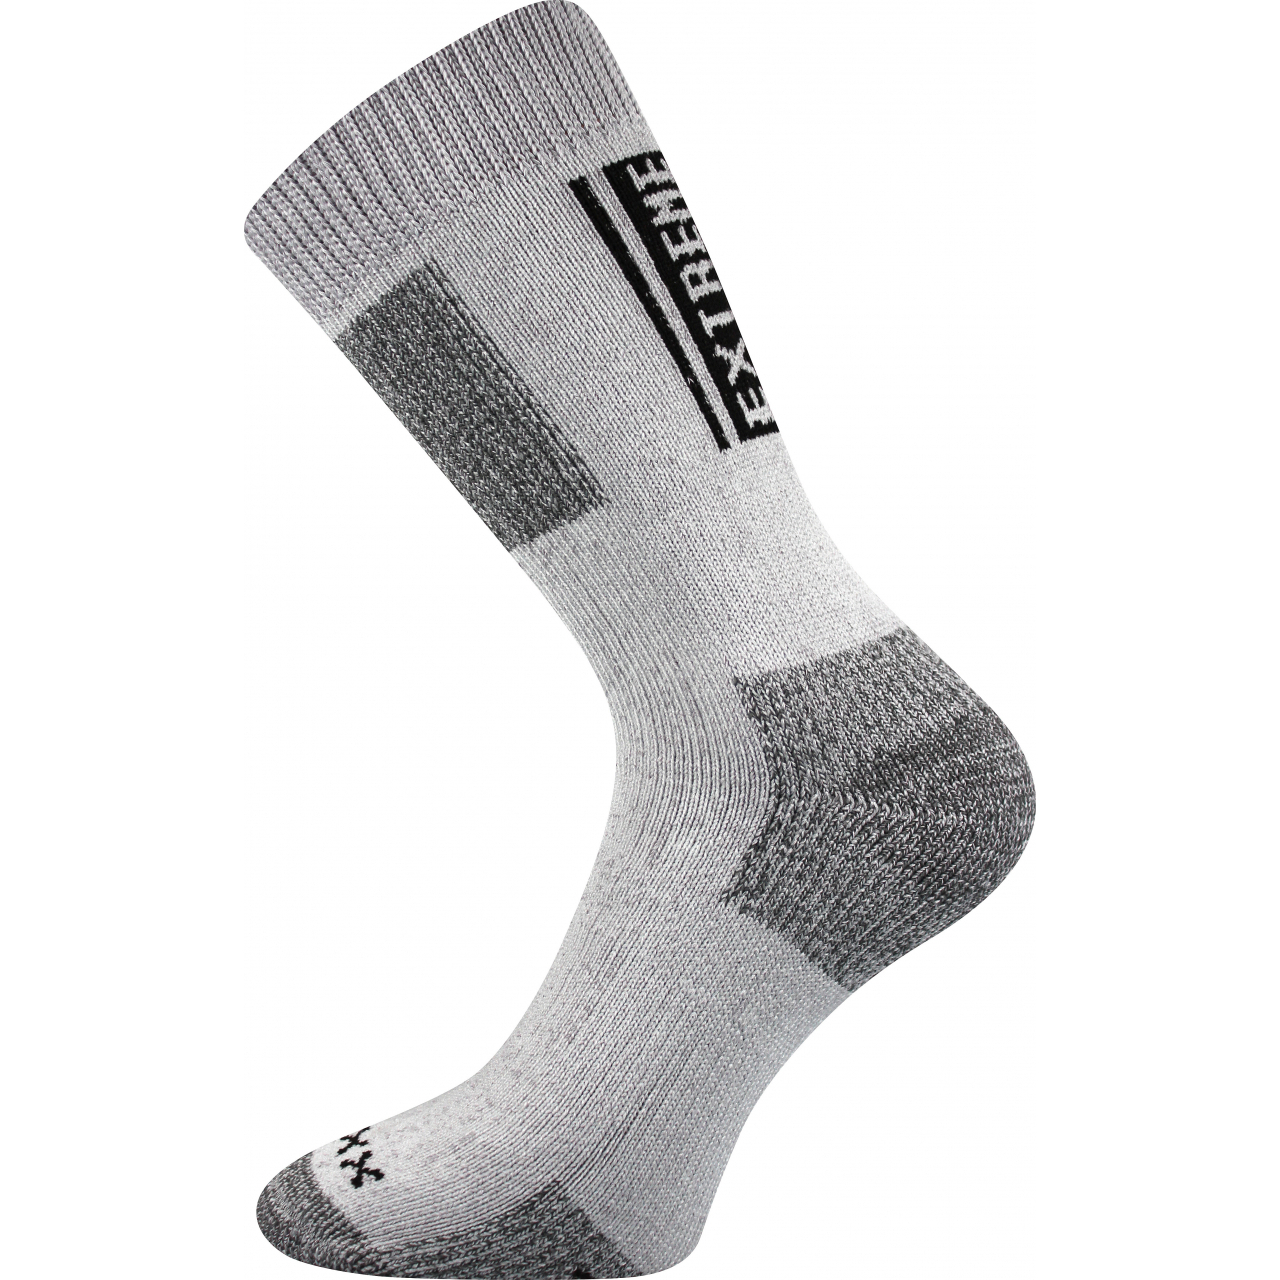 Ponožky unisex termo Voxx Extrém - světle šedé, 43-46